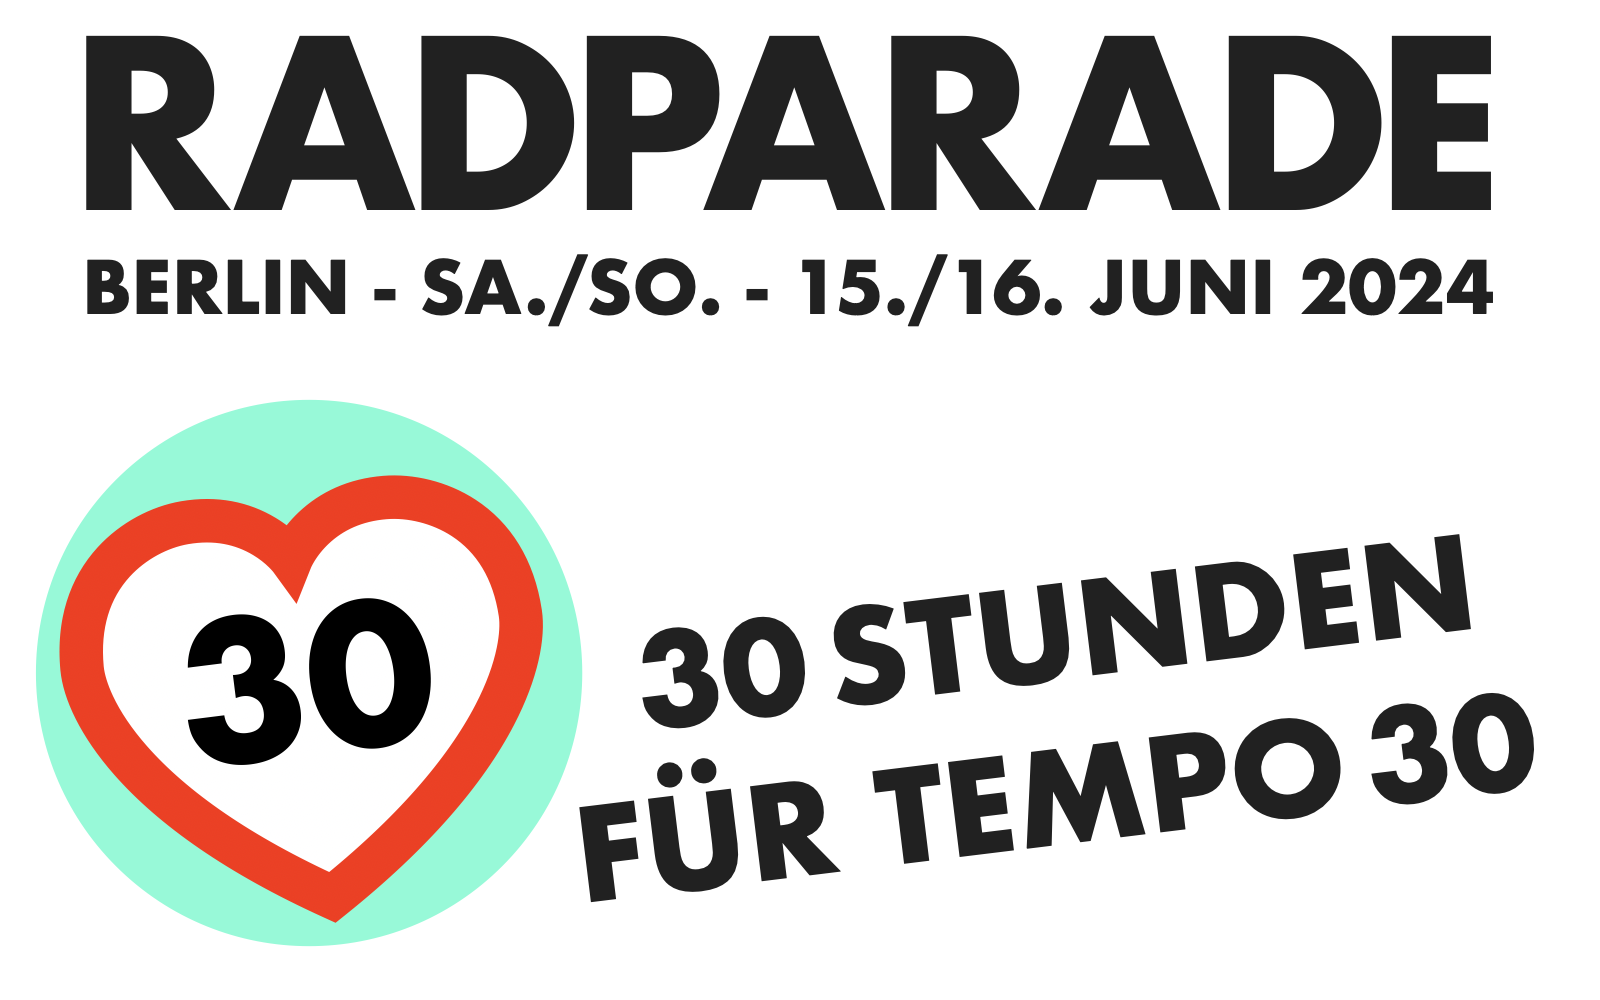 Radparade Berlin 2024